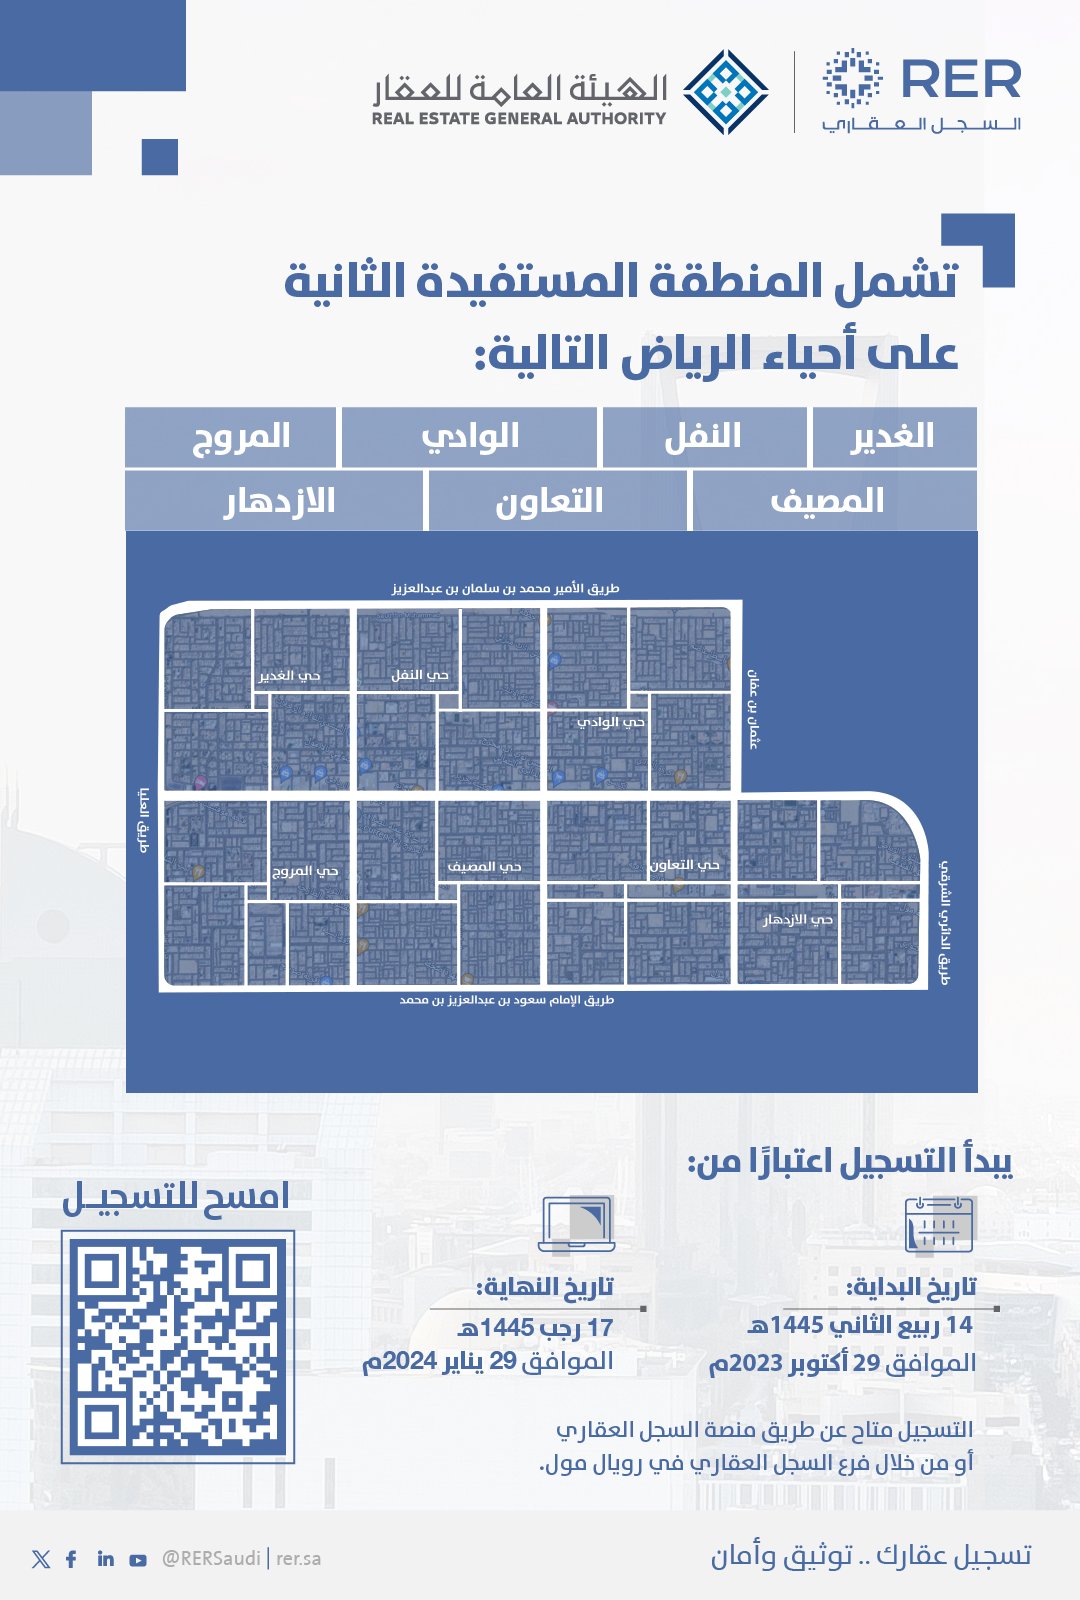 الهيئة العامة للعقار تُعلن عن 7 أحياء مُستفيدة من السجل العقاري في الرياض